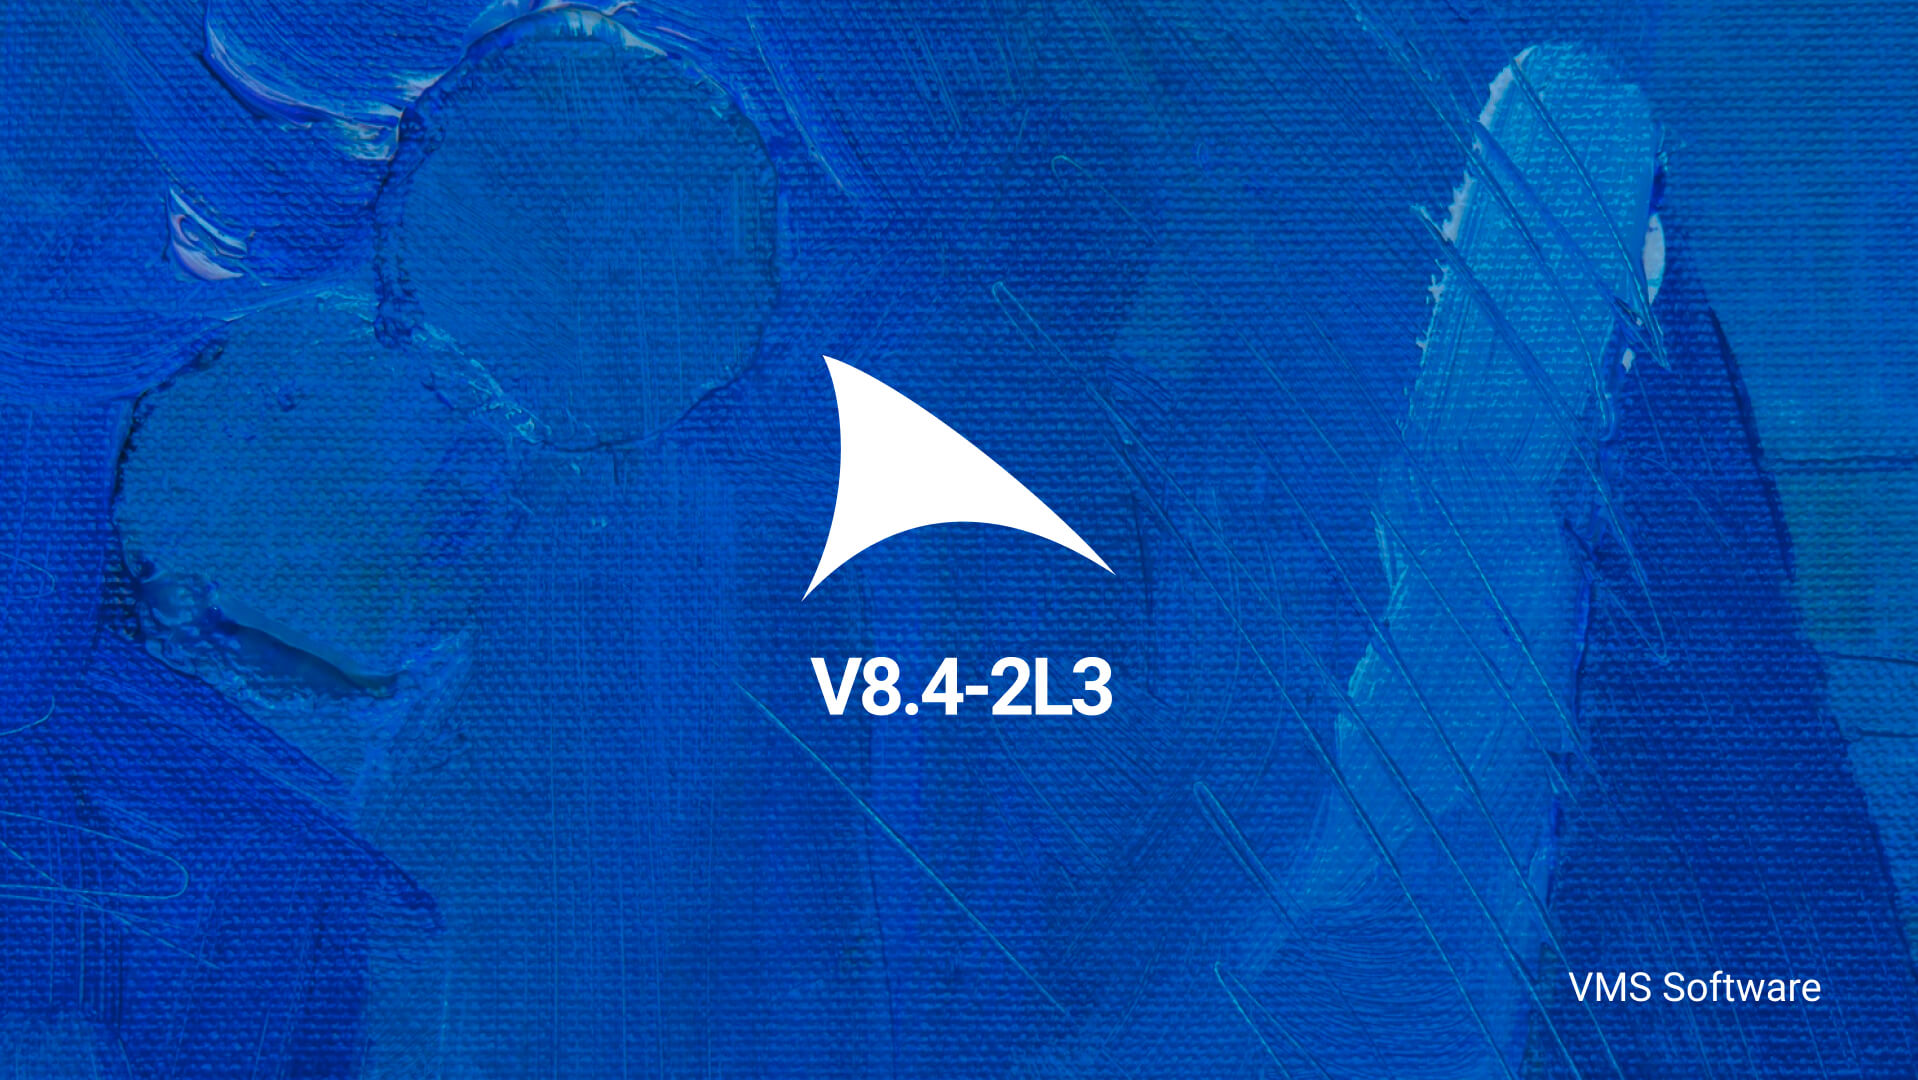 VSI OpenVMS v8.4-2L3 Released